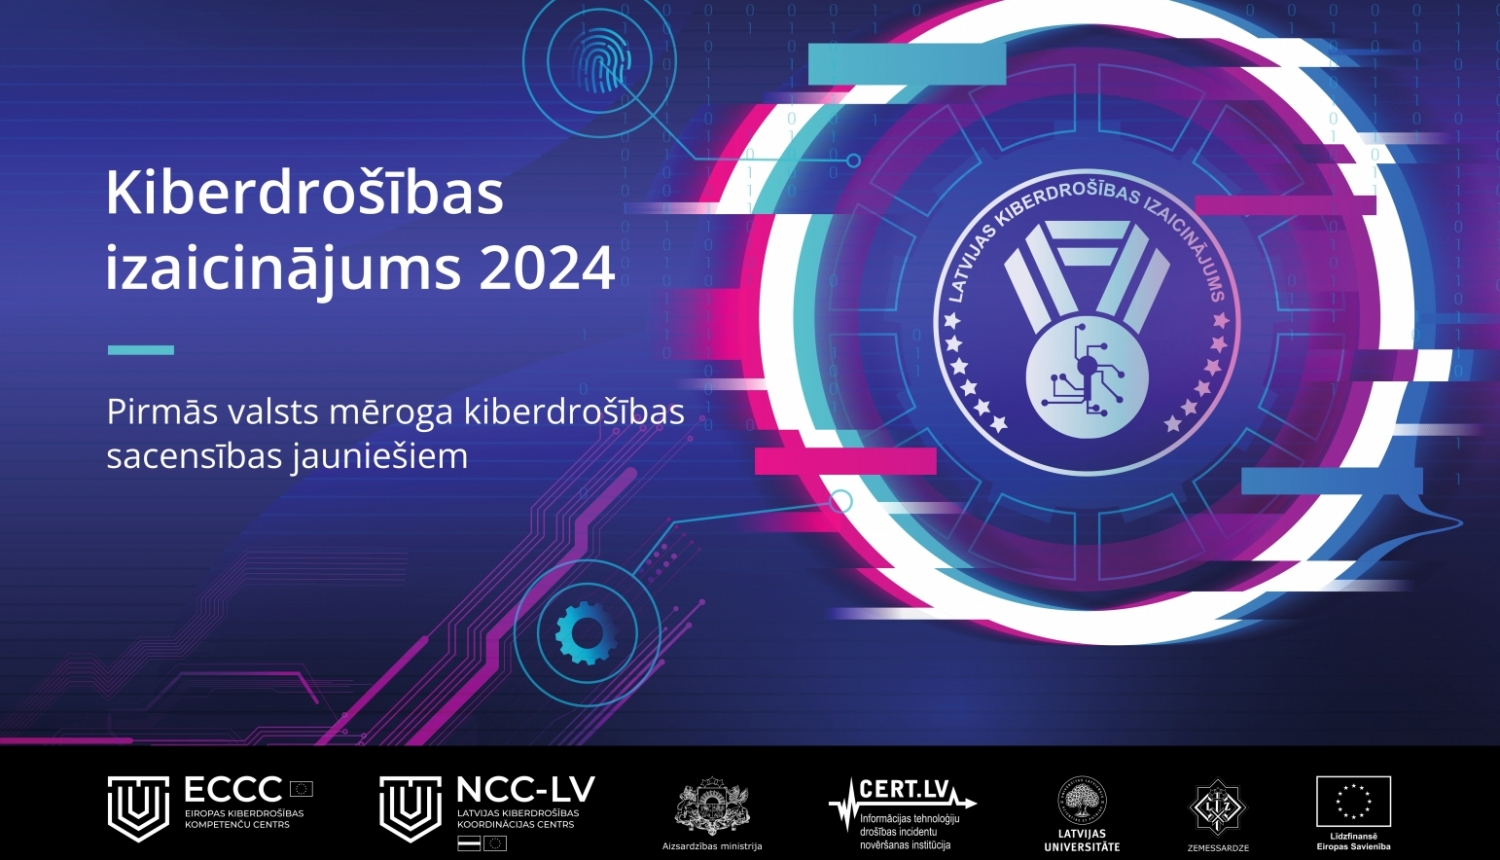 Kiberdrošības izaicinājums 2024 - Pirmās valsts mēroga kiberdrošības sacencības jauniešiem